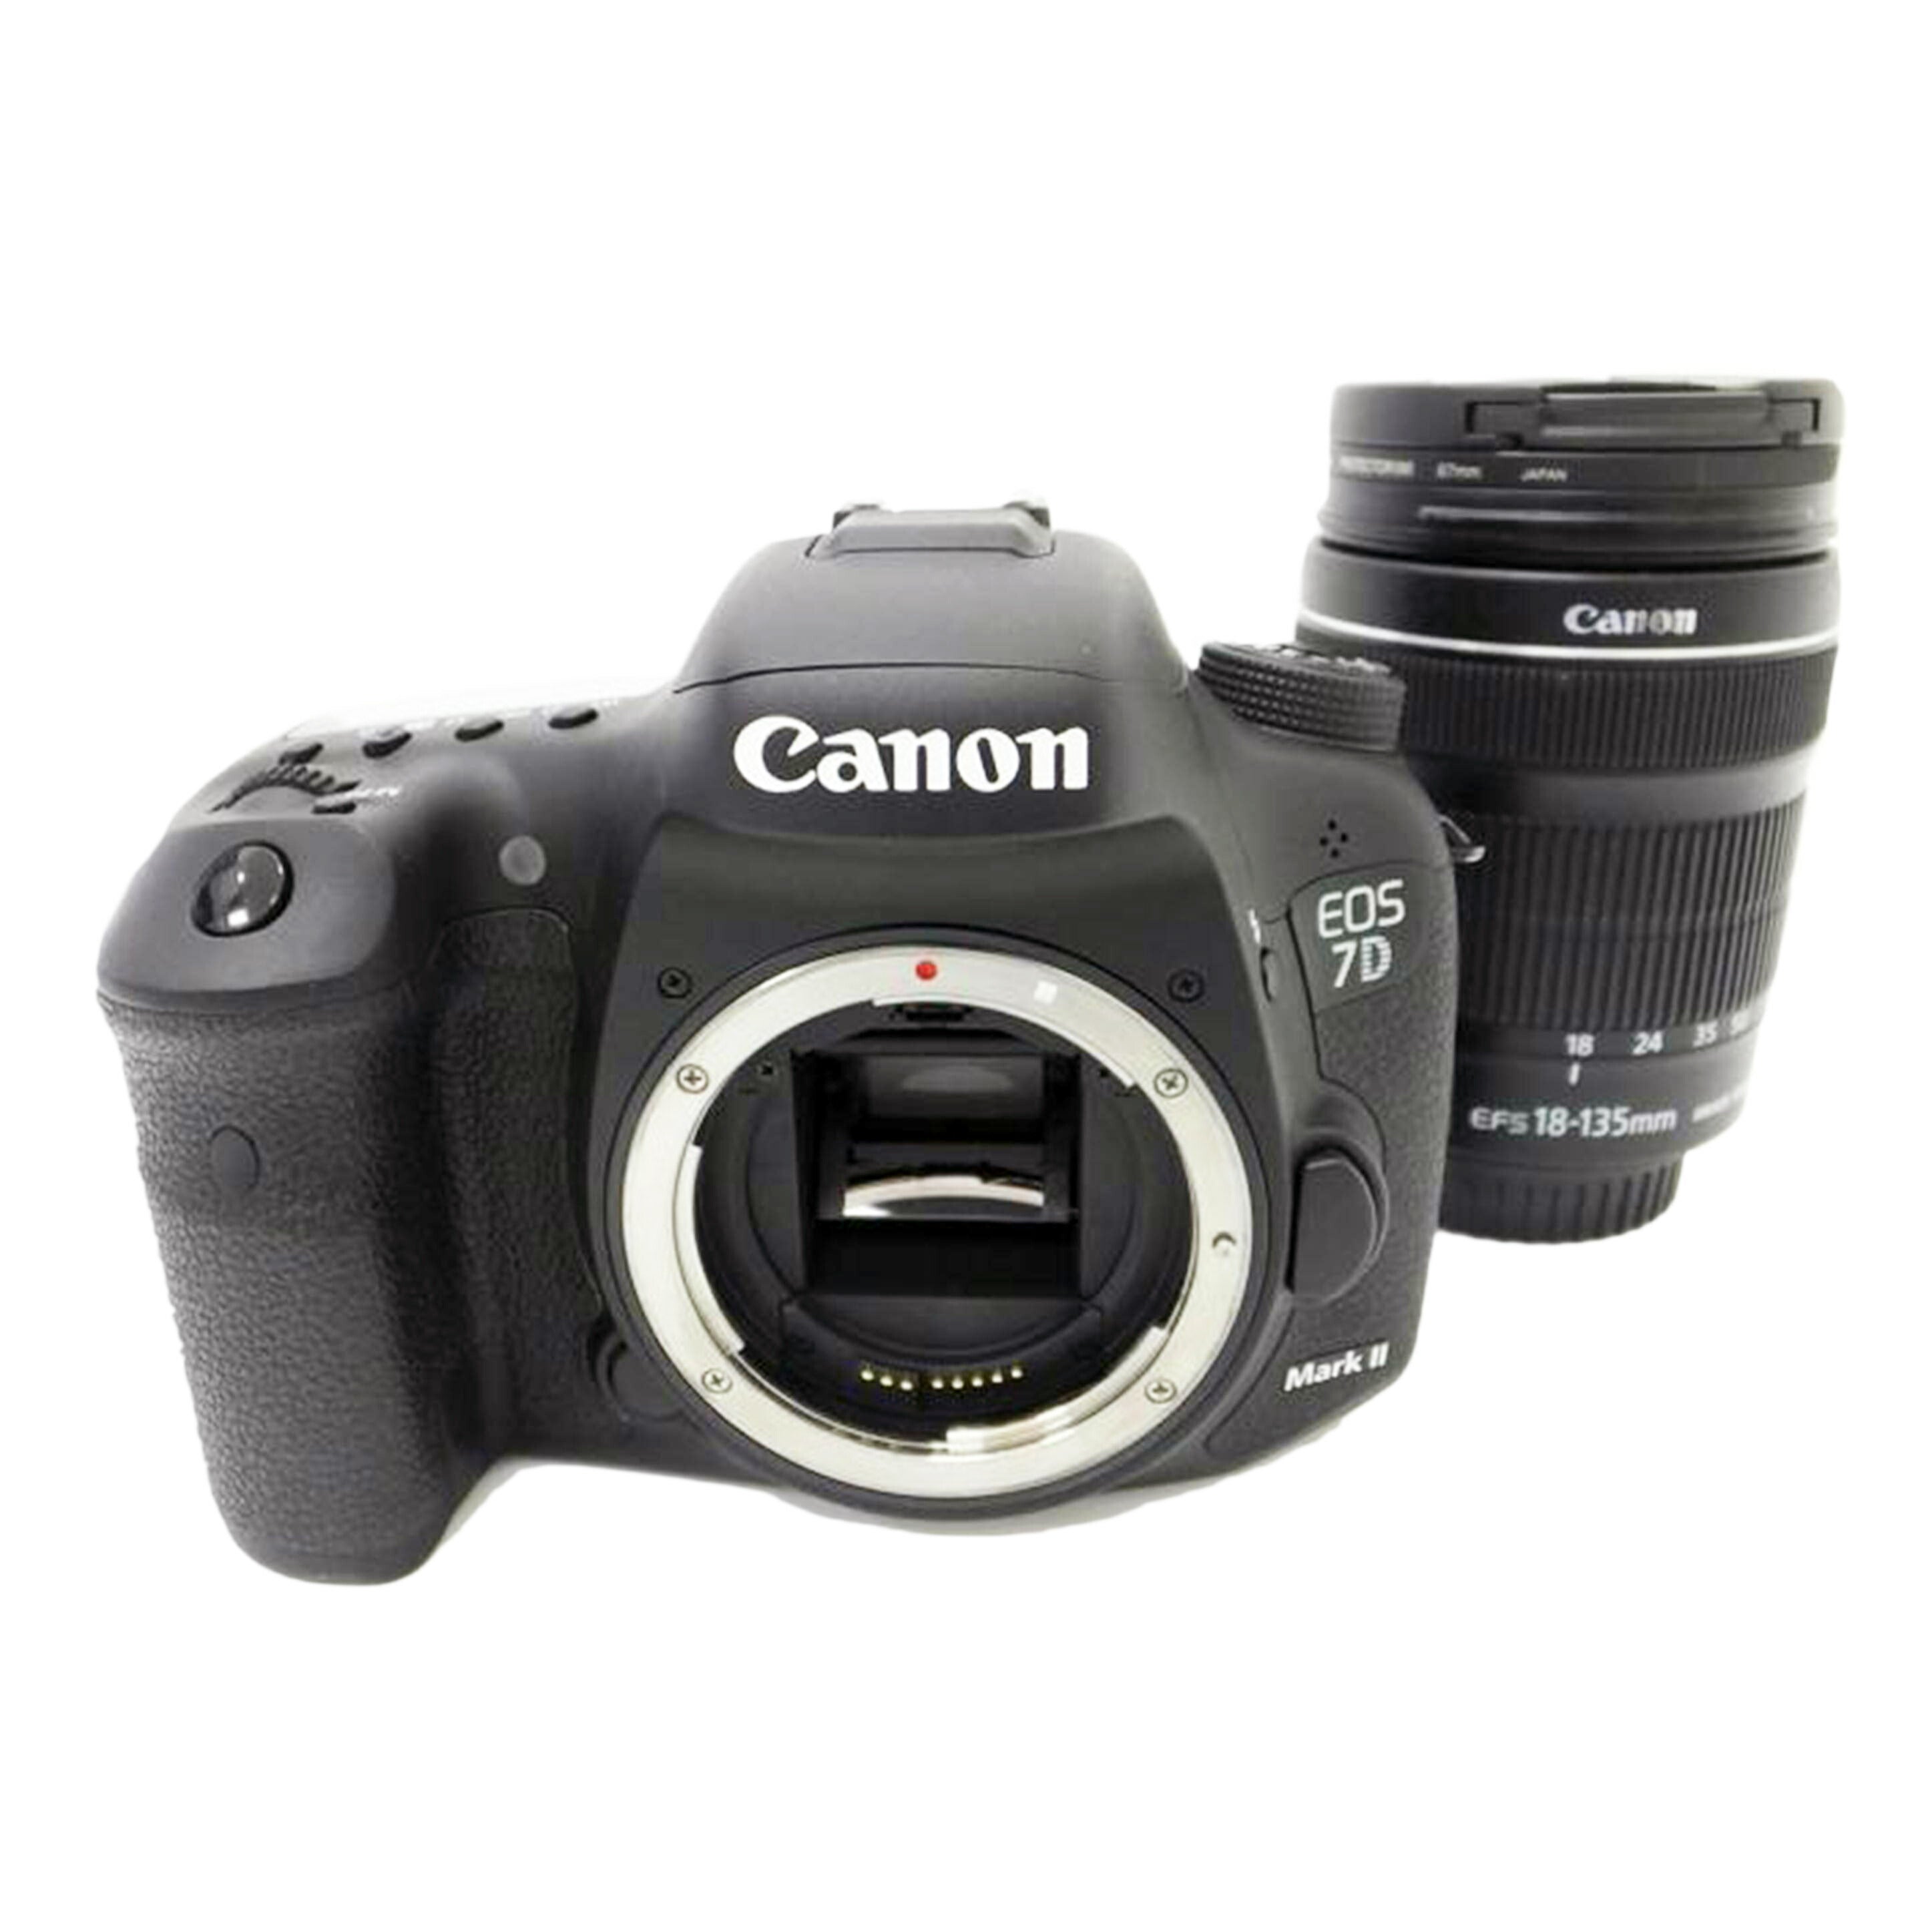 最低価格の CANONEOS7D MarkⅡ レンズ付き デジタルカメラ - powertee.com